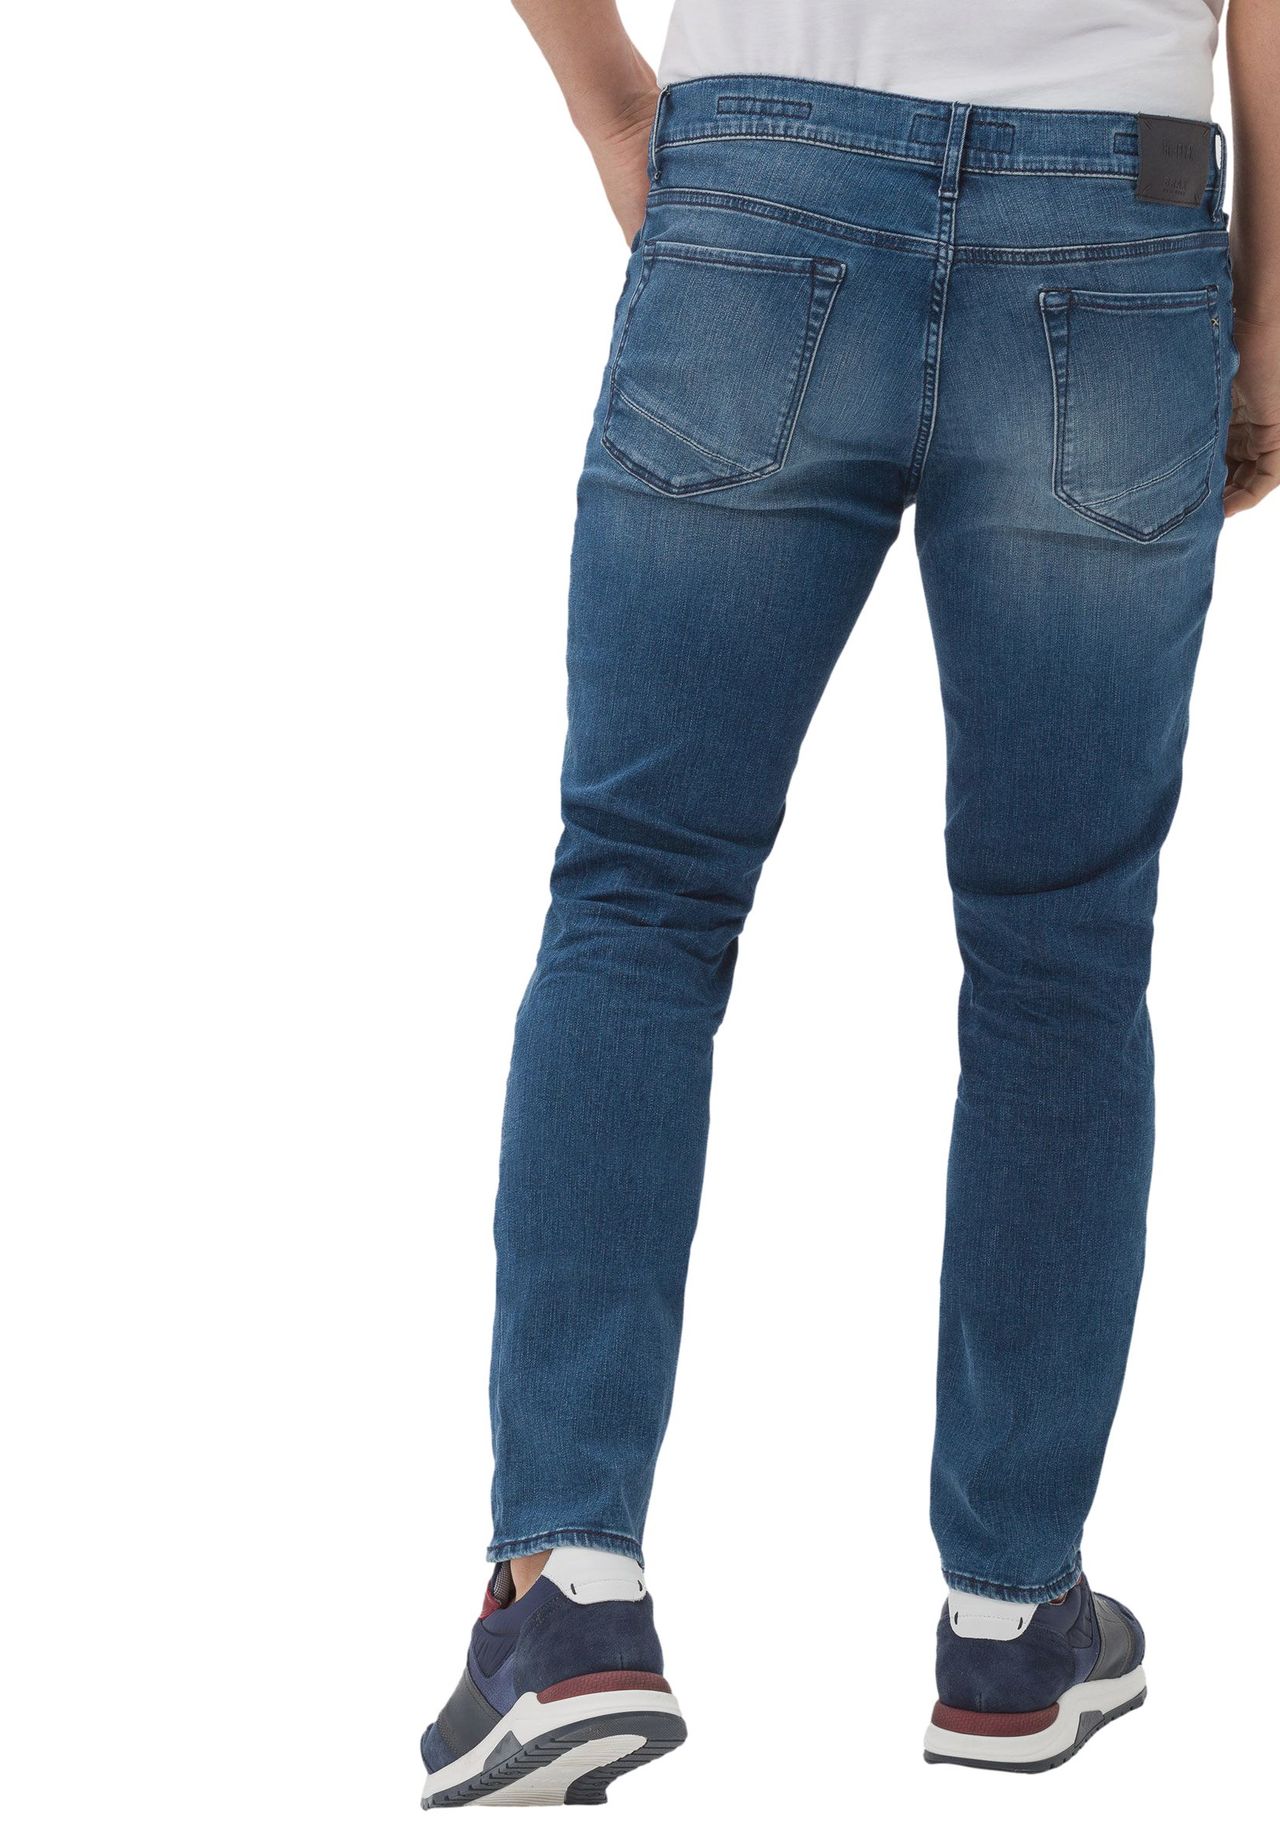 BRAX Jeans, Slim-Fit, Waschung, für Herren | GALERIA